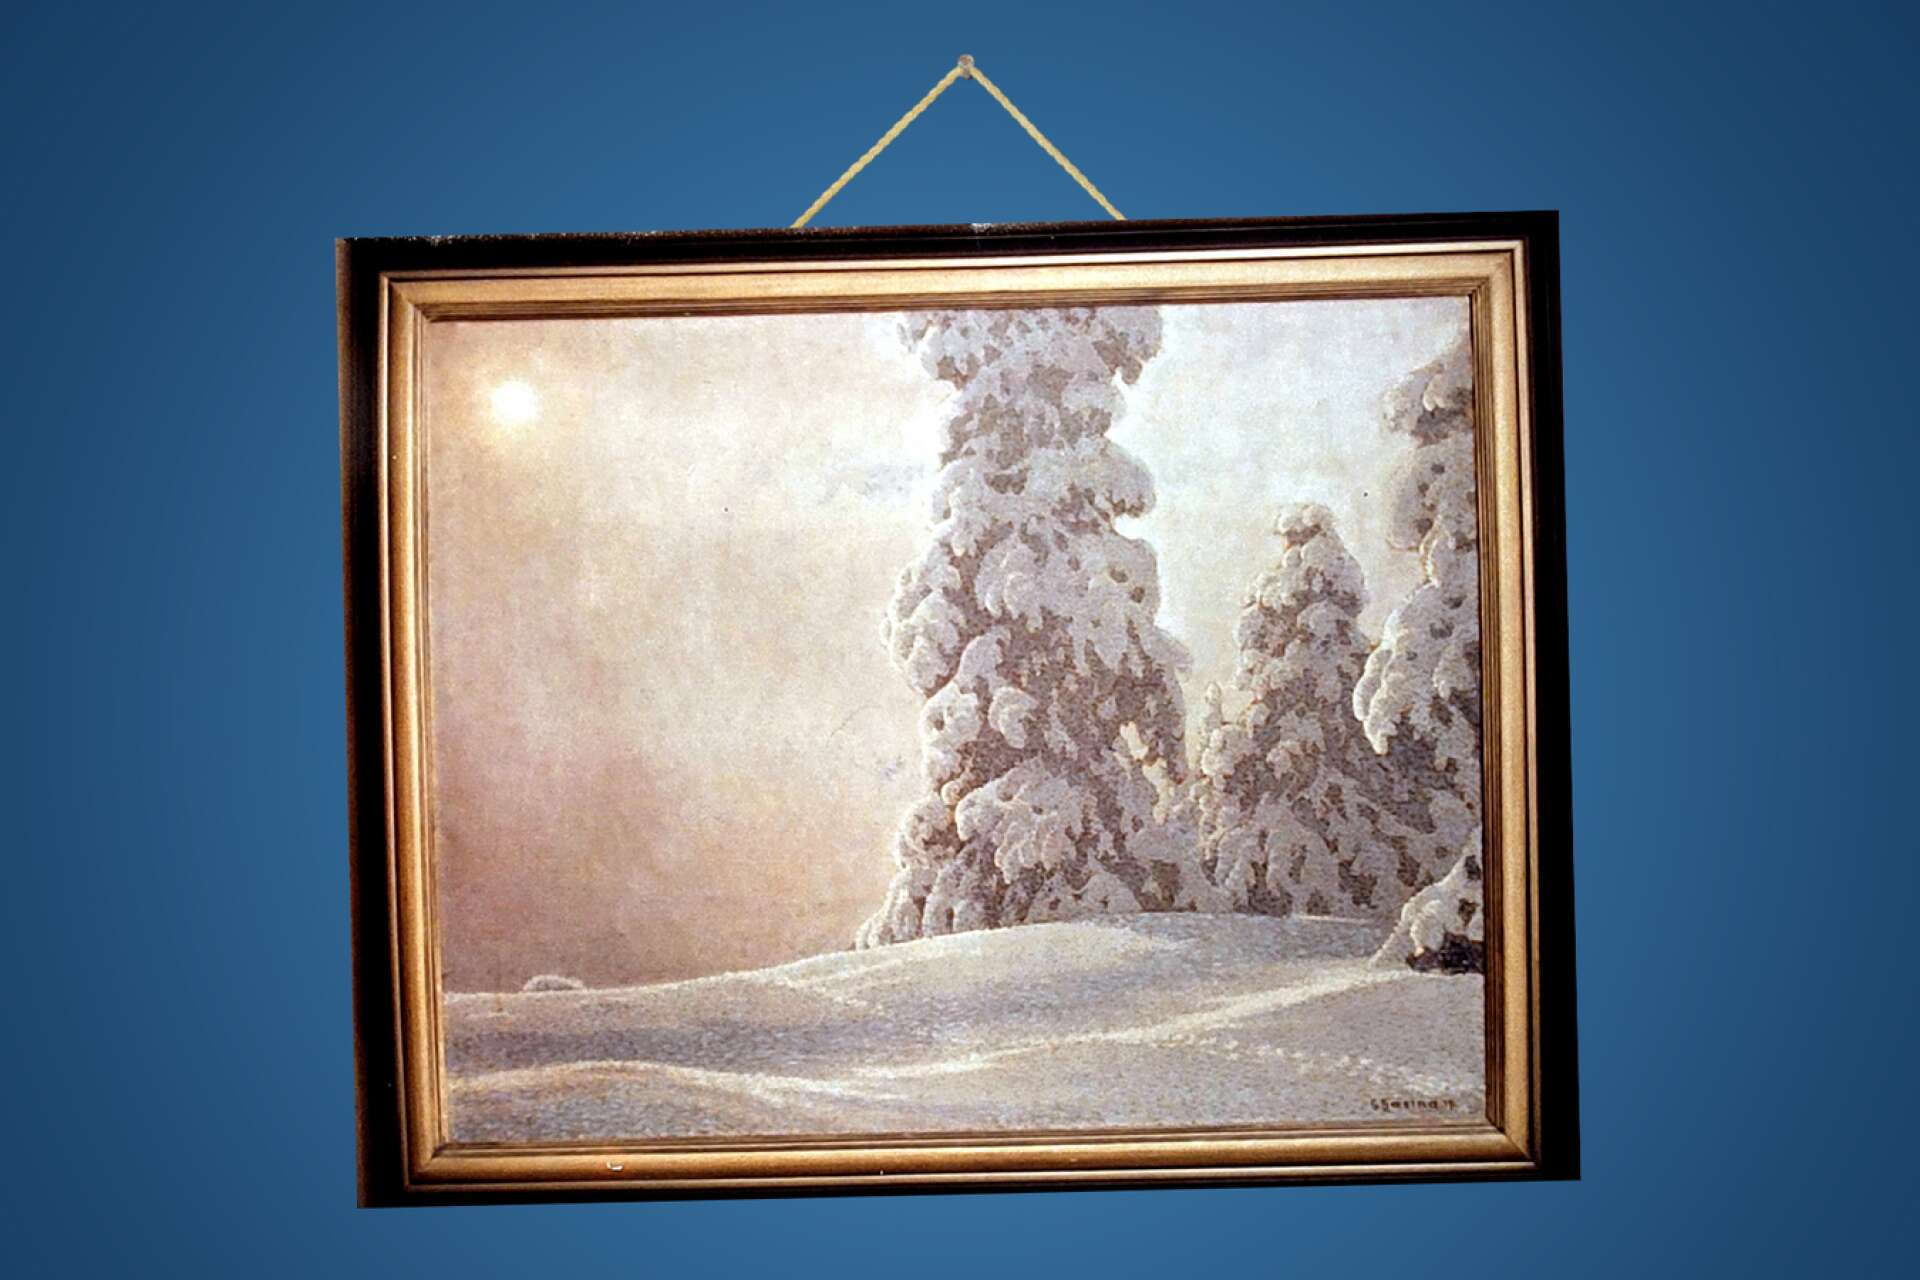 Den här målningen av Gustaf Fjaestad stals från Arvika Nyheters redaktion 1991. Den var värderad till 550 000 kronor.